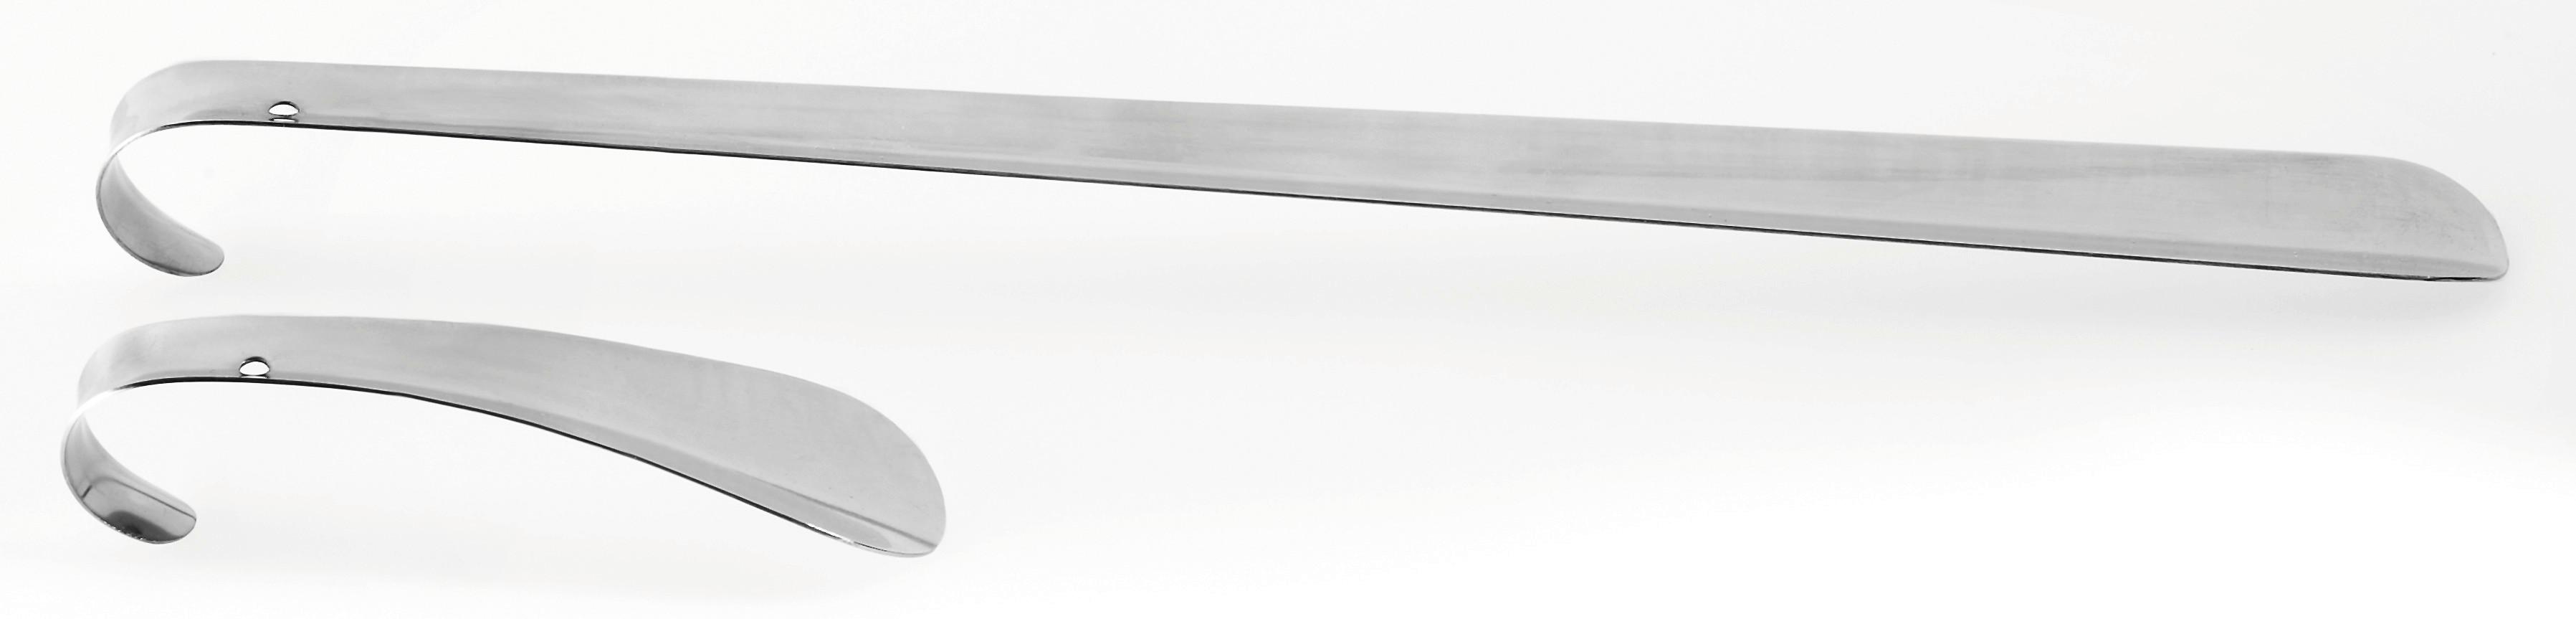 Schuhlöffel Stahl L: 15 cm & 41 cm 2 Stück - Chromfarben, KONVENTIONELL, Metall - Homezone